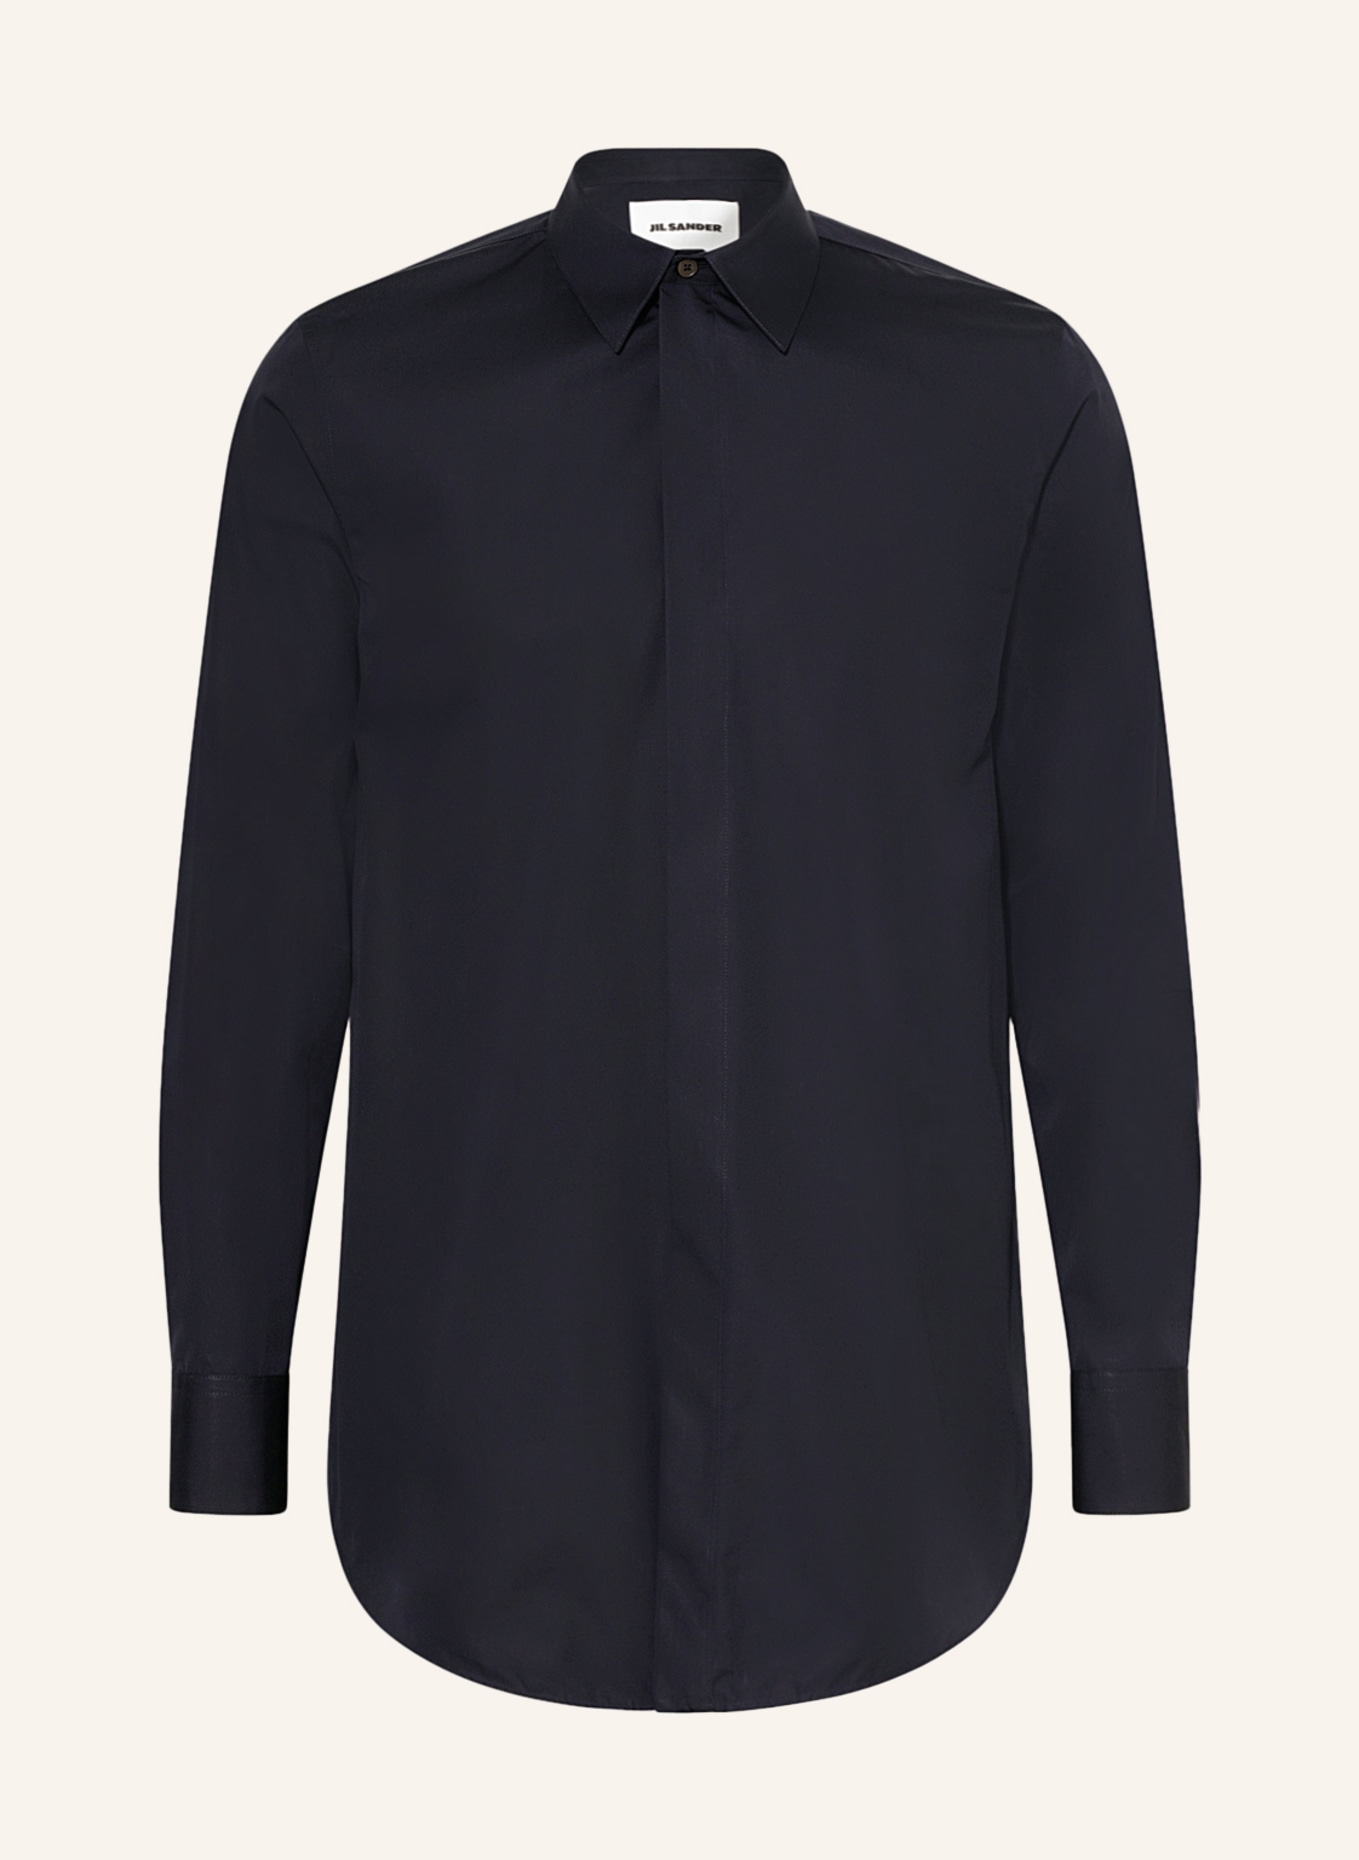 JIL SANDER Shirt regular fit in dark blue